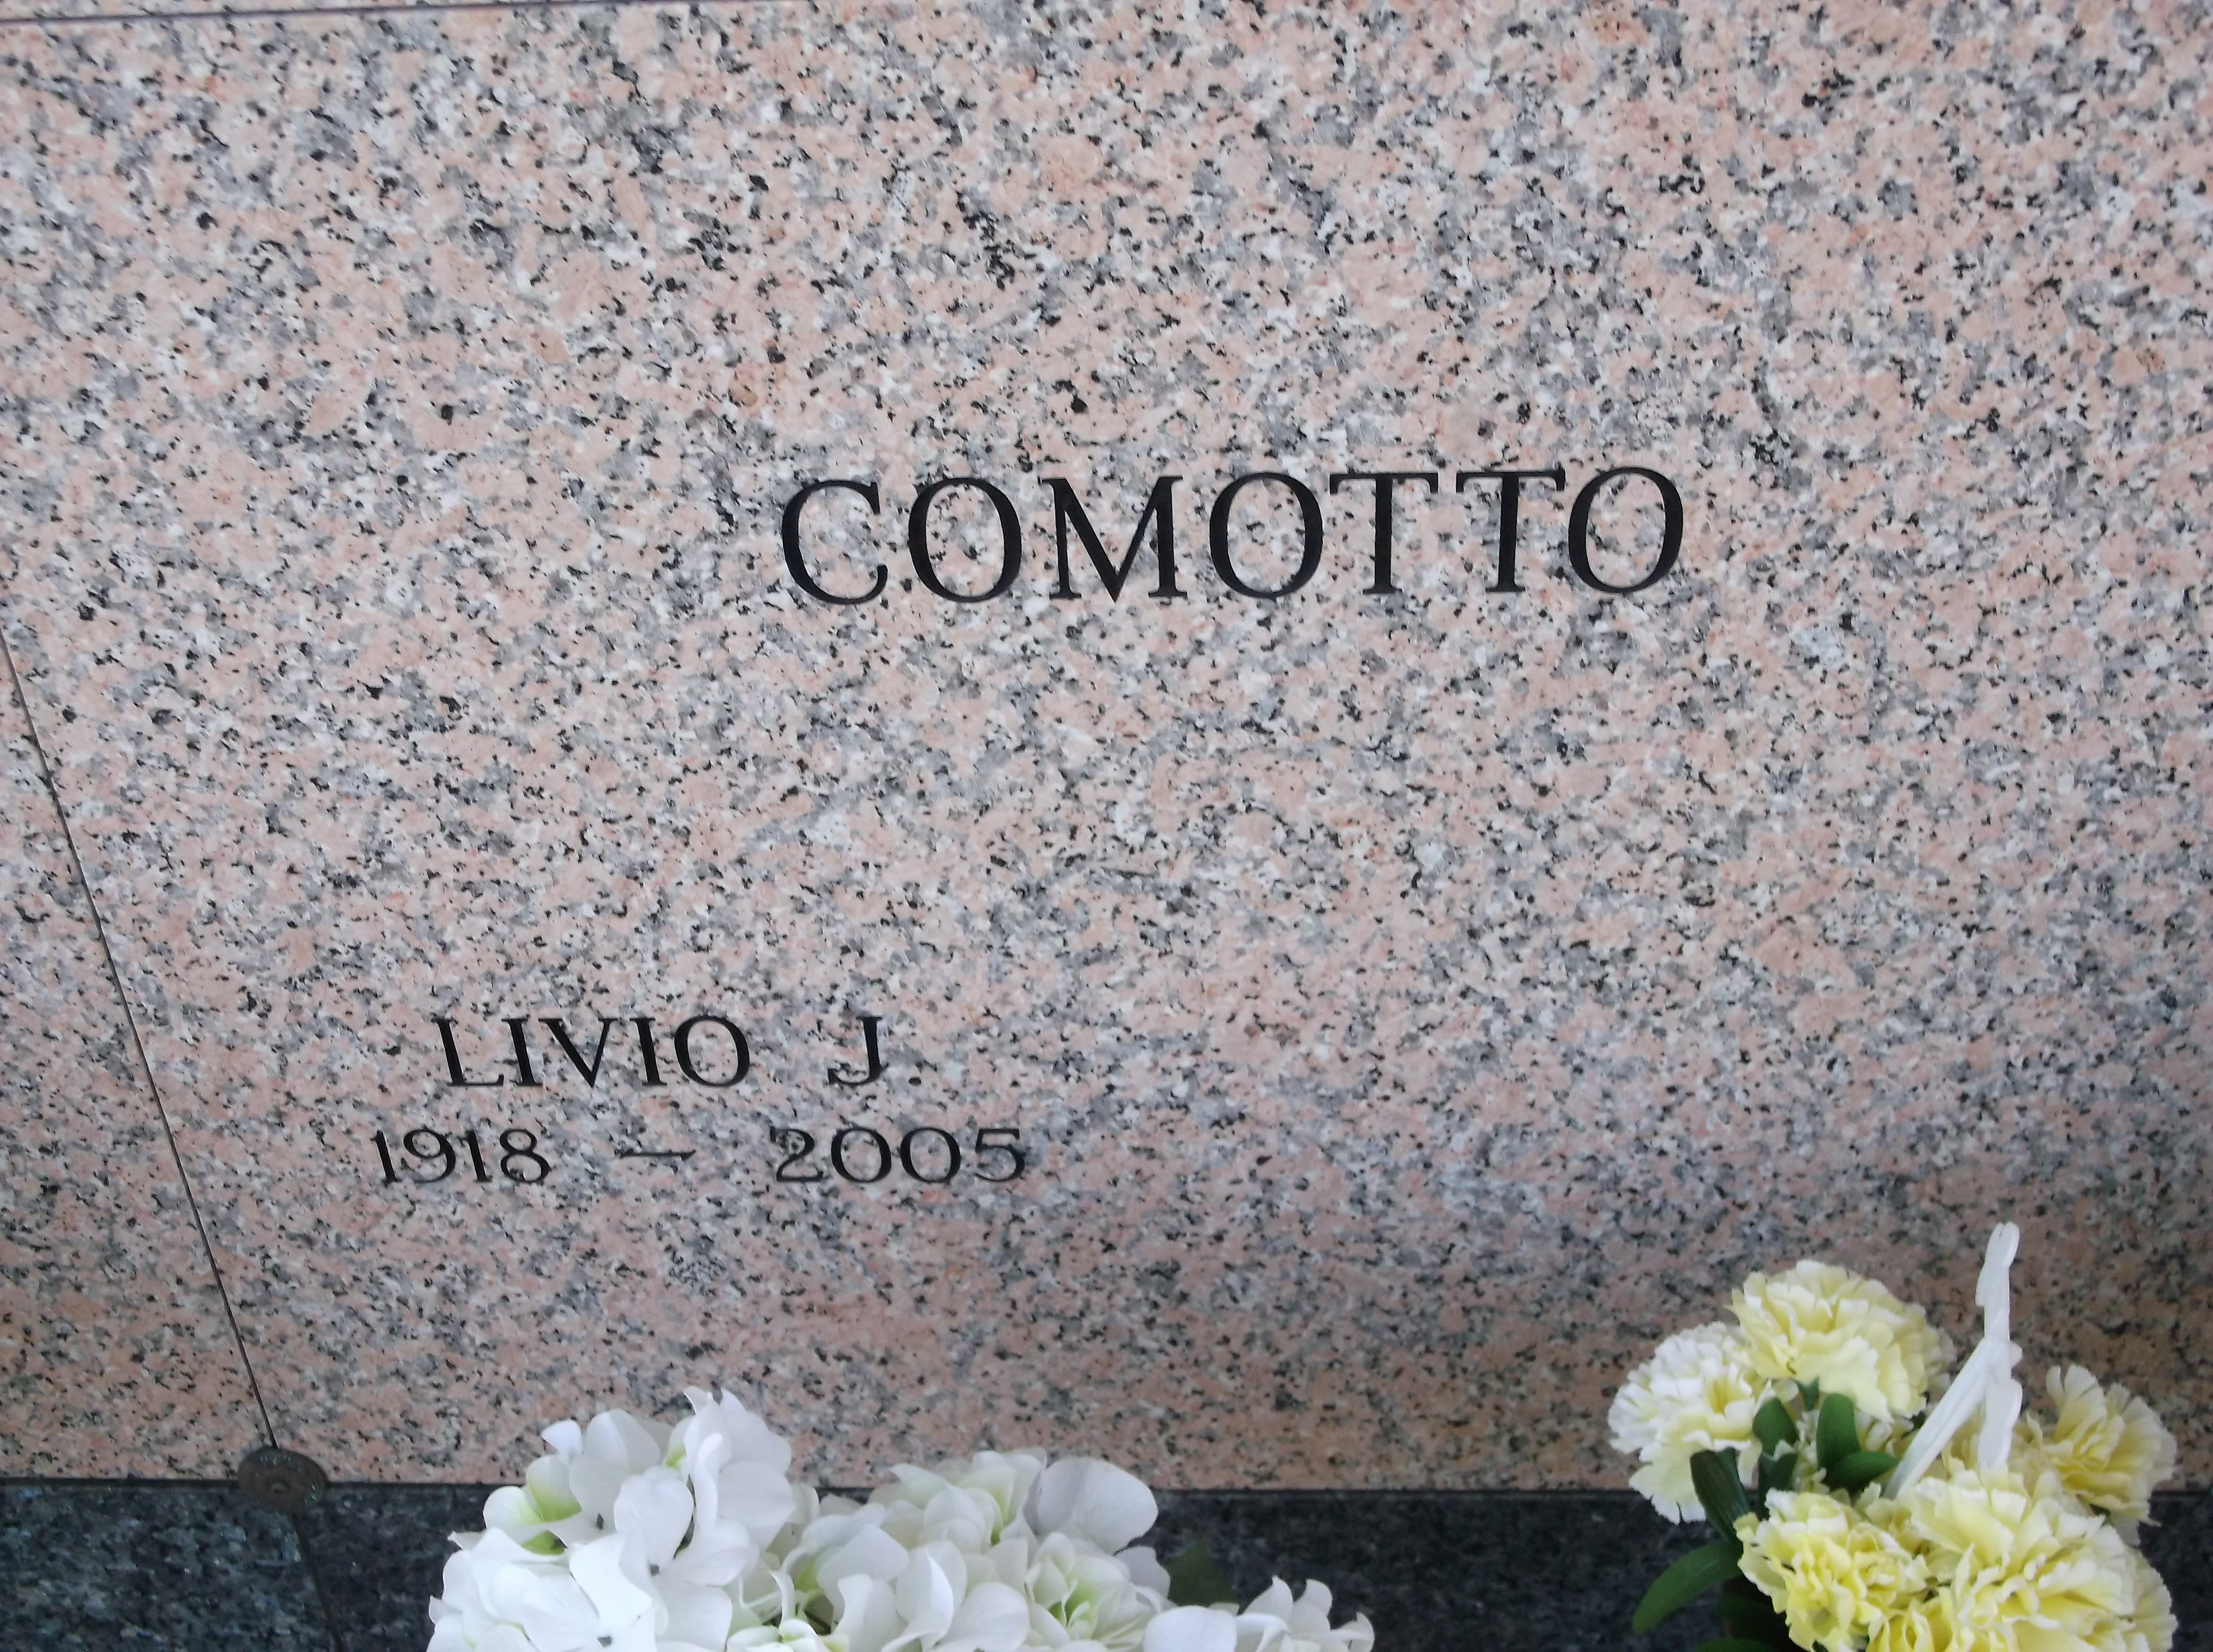 Livio J Comotto